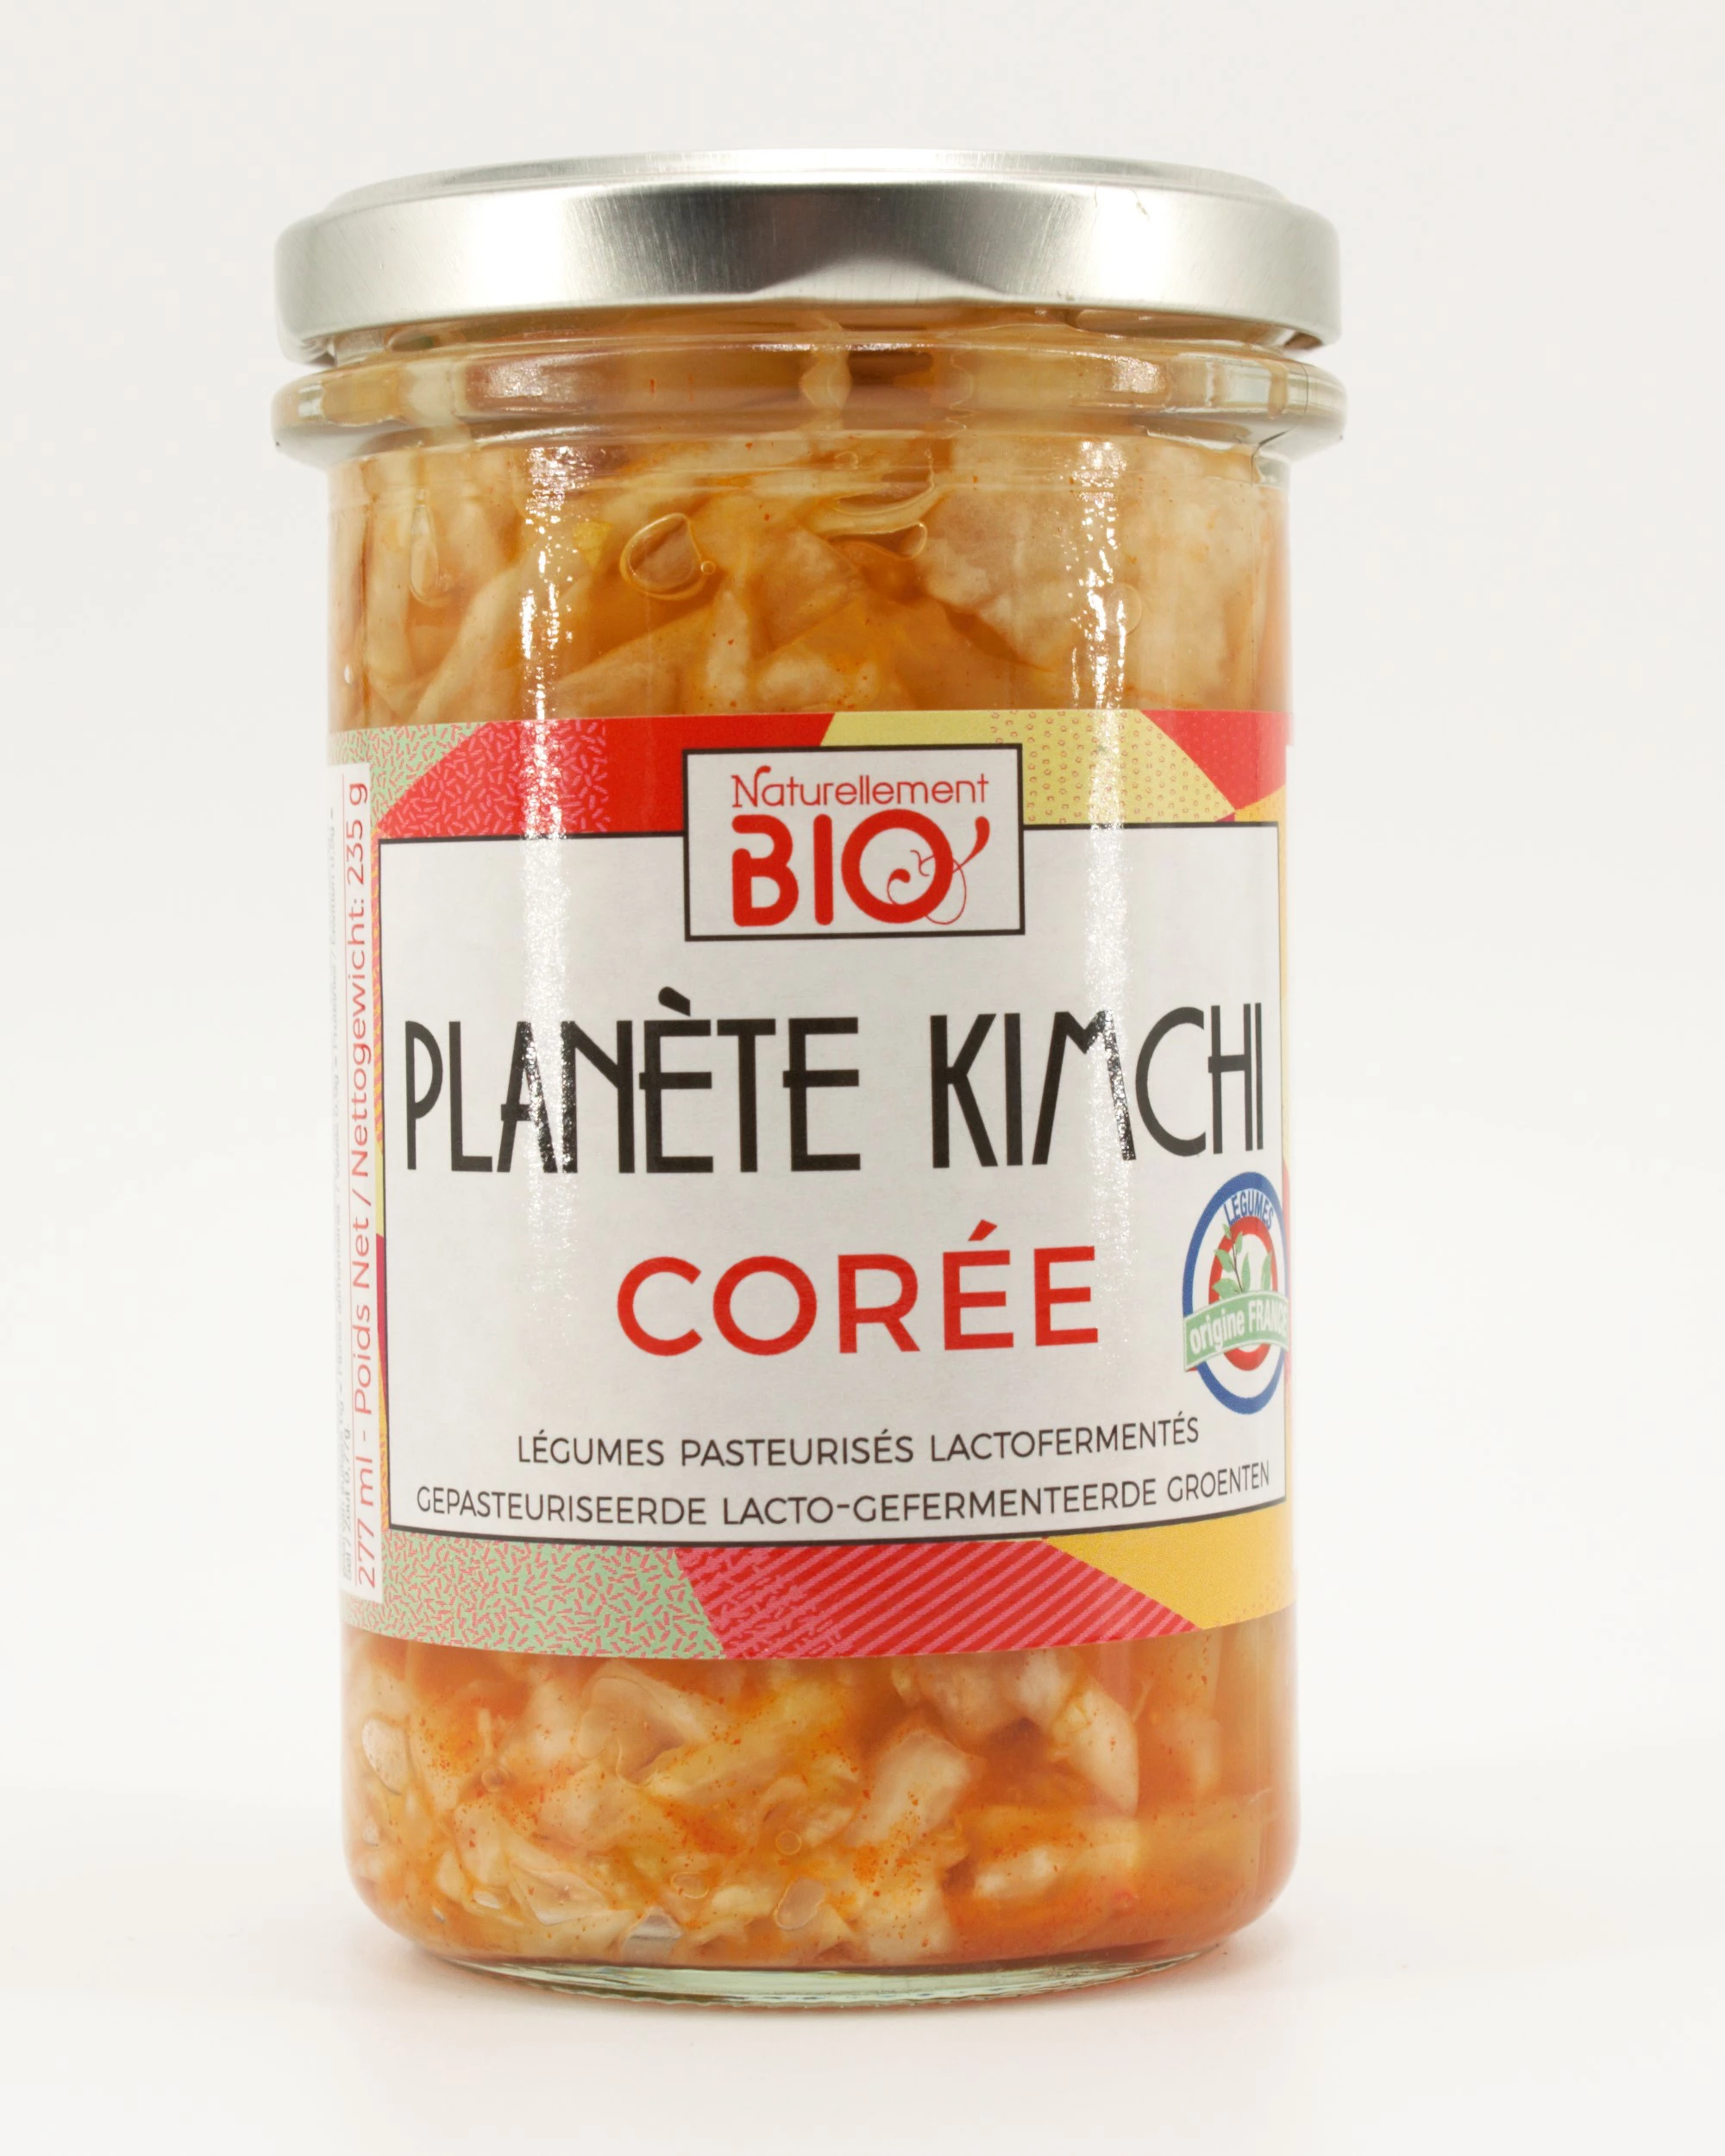 Planete Kimchi Corea Bio 250g